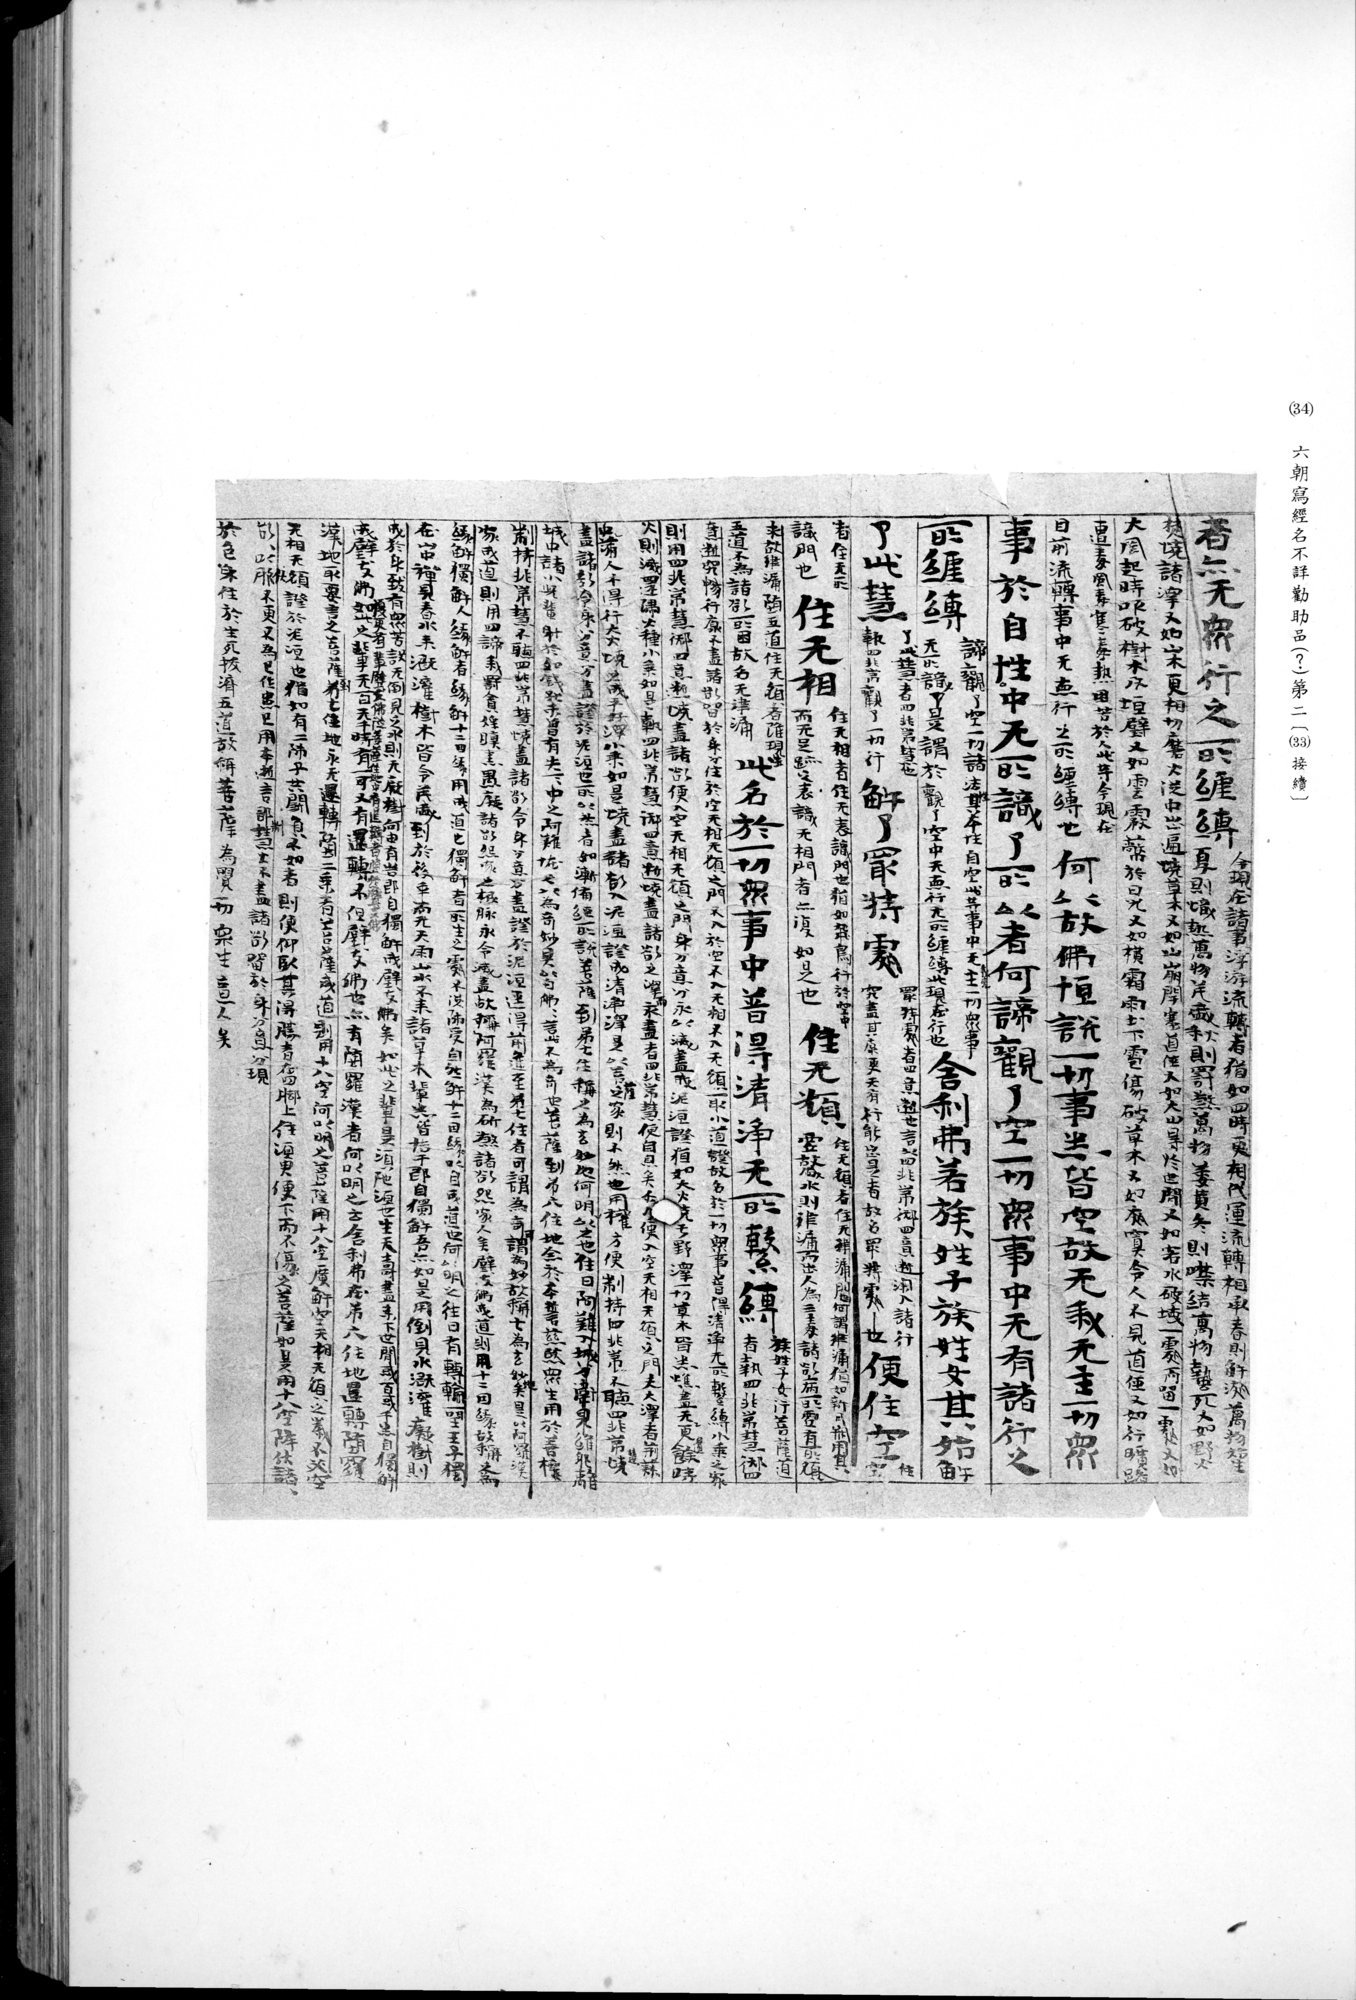 西域考古図譜 : vol.2 / 83 ページ（白黒高解像度画像）